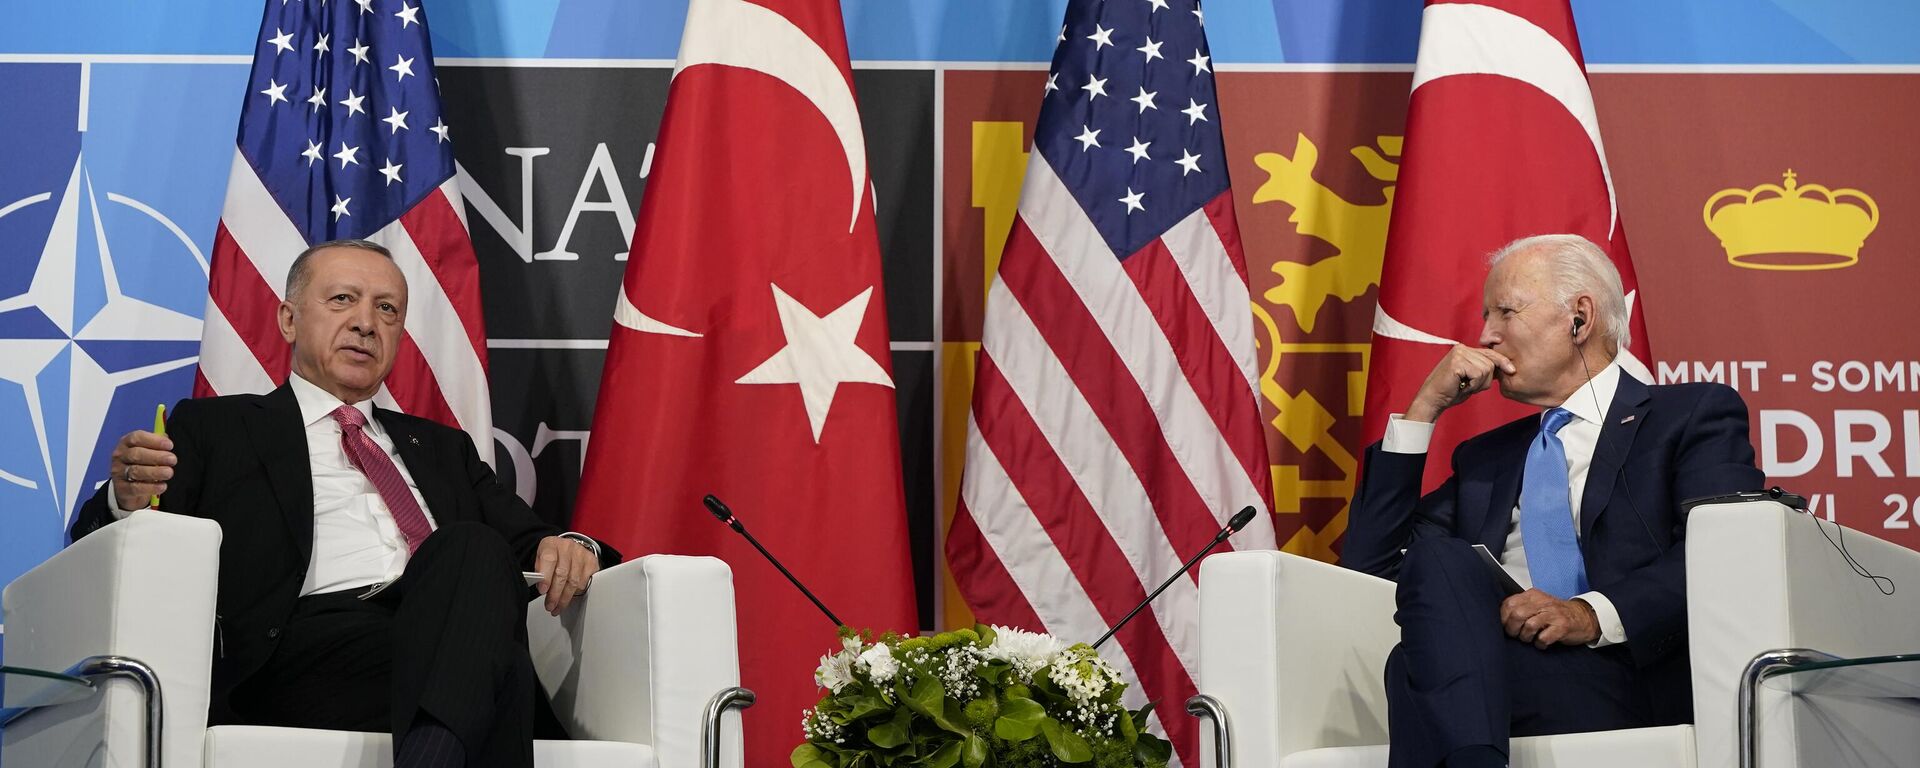 El presidente turco Recep Tayyip Erdogan y el presidente estadounidense Joe Biden en la Cumbre de la OTAN en Madrid - Sputnik Mundo, 1920, 15.01.2023